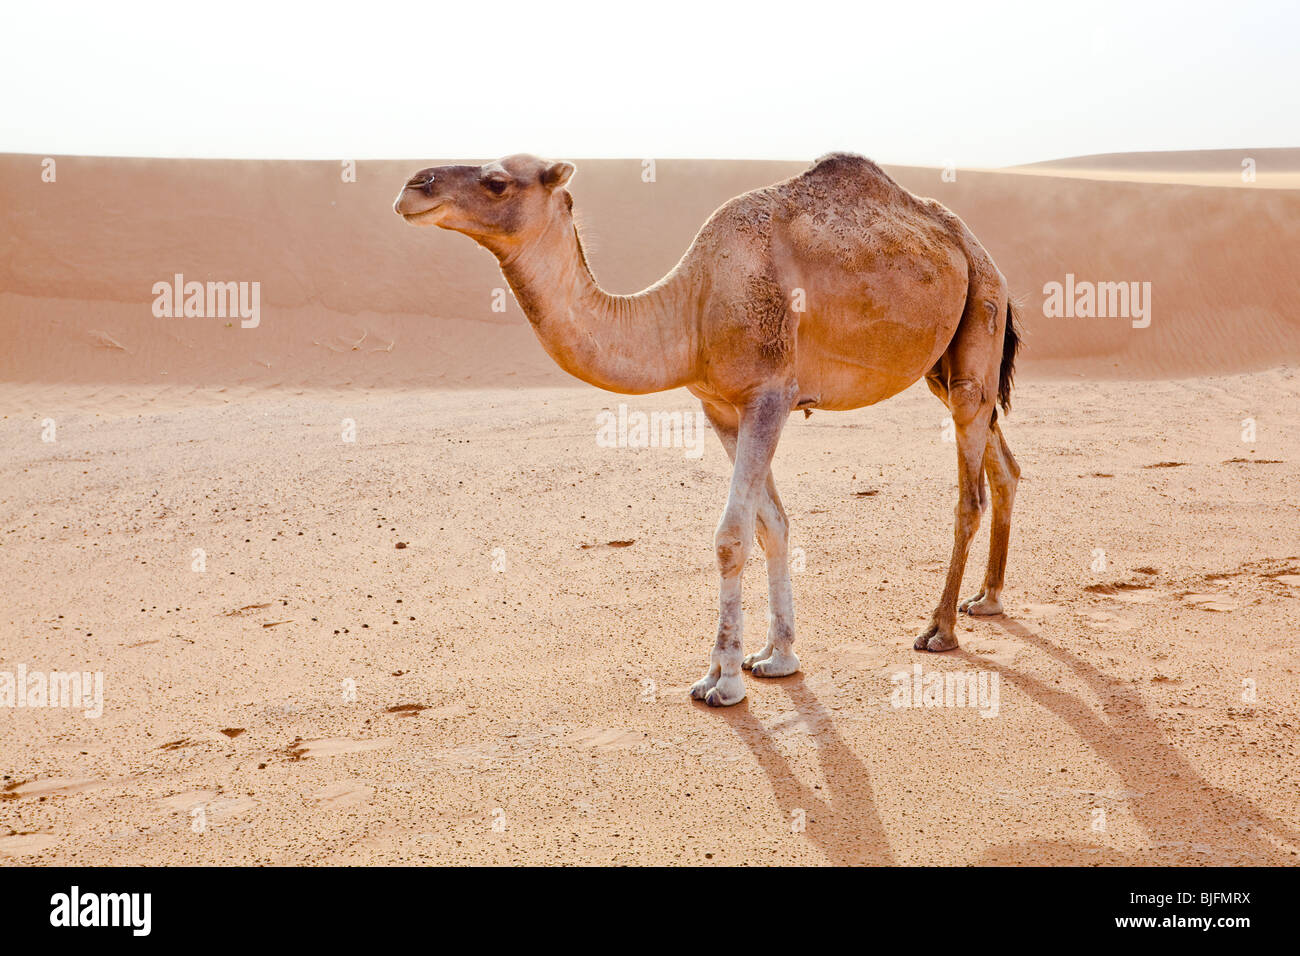 Camel in Sahara desert in Morocco. Horizontal shot. Stock Photo